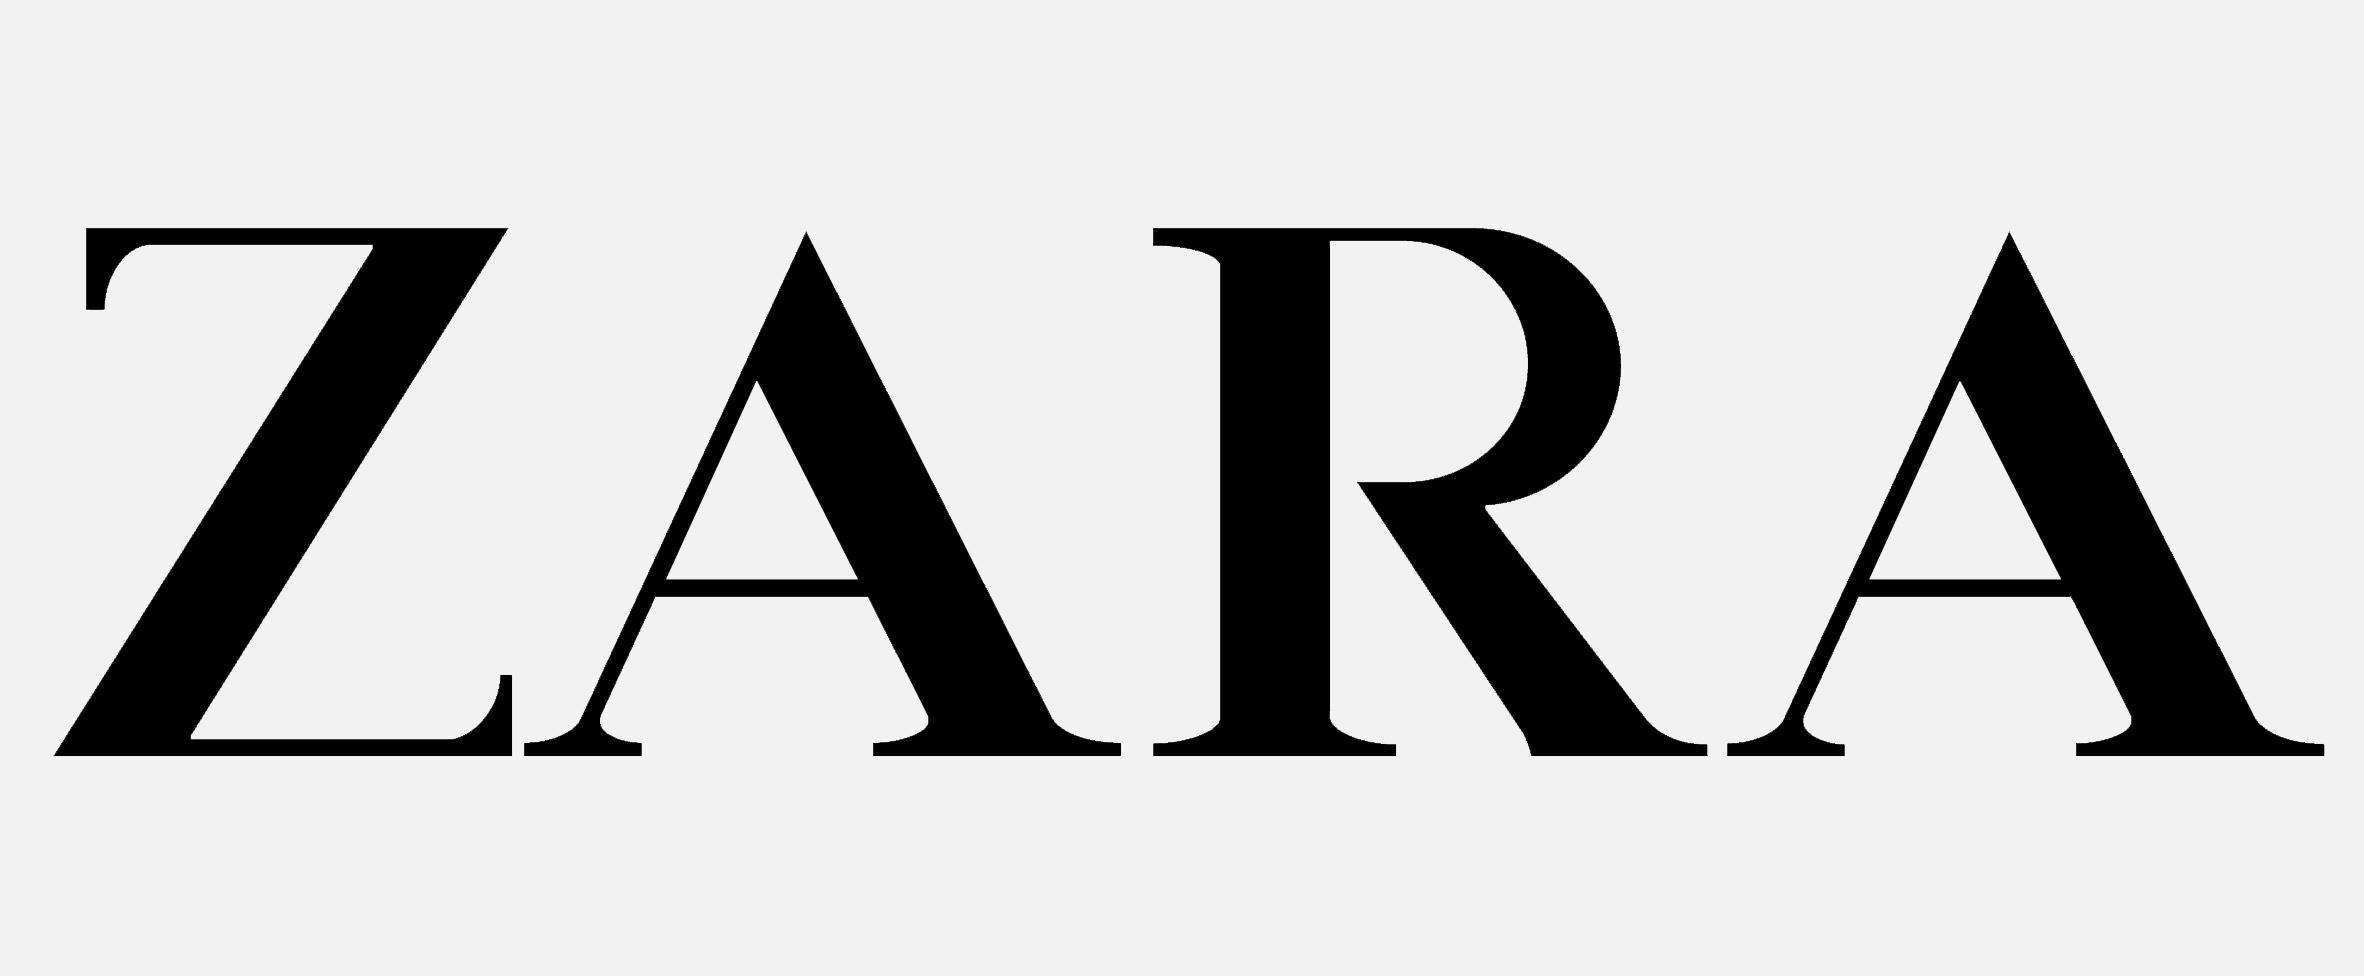 Zara's logo gets a controversial revamp by Baron & Baron